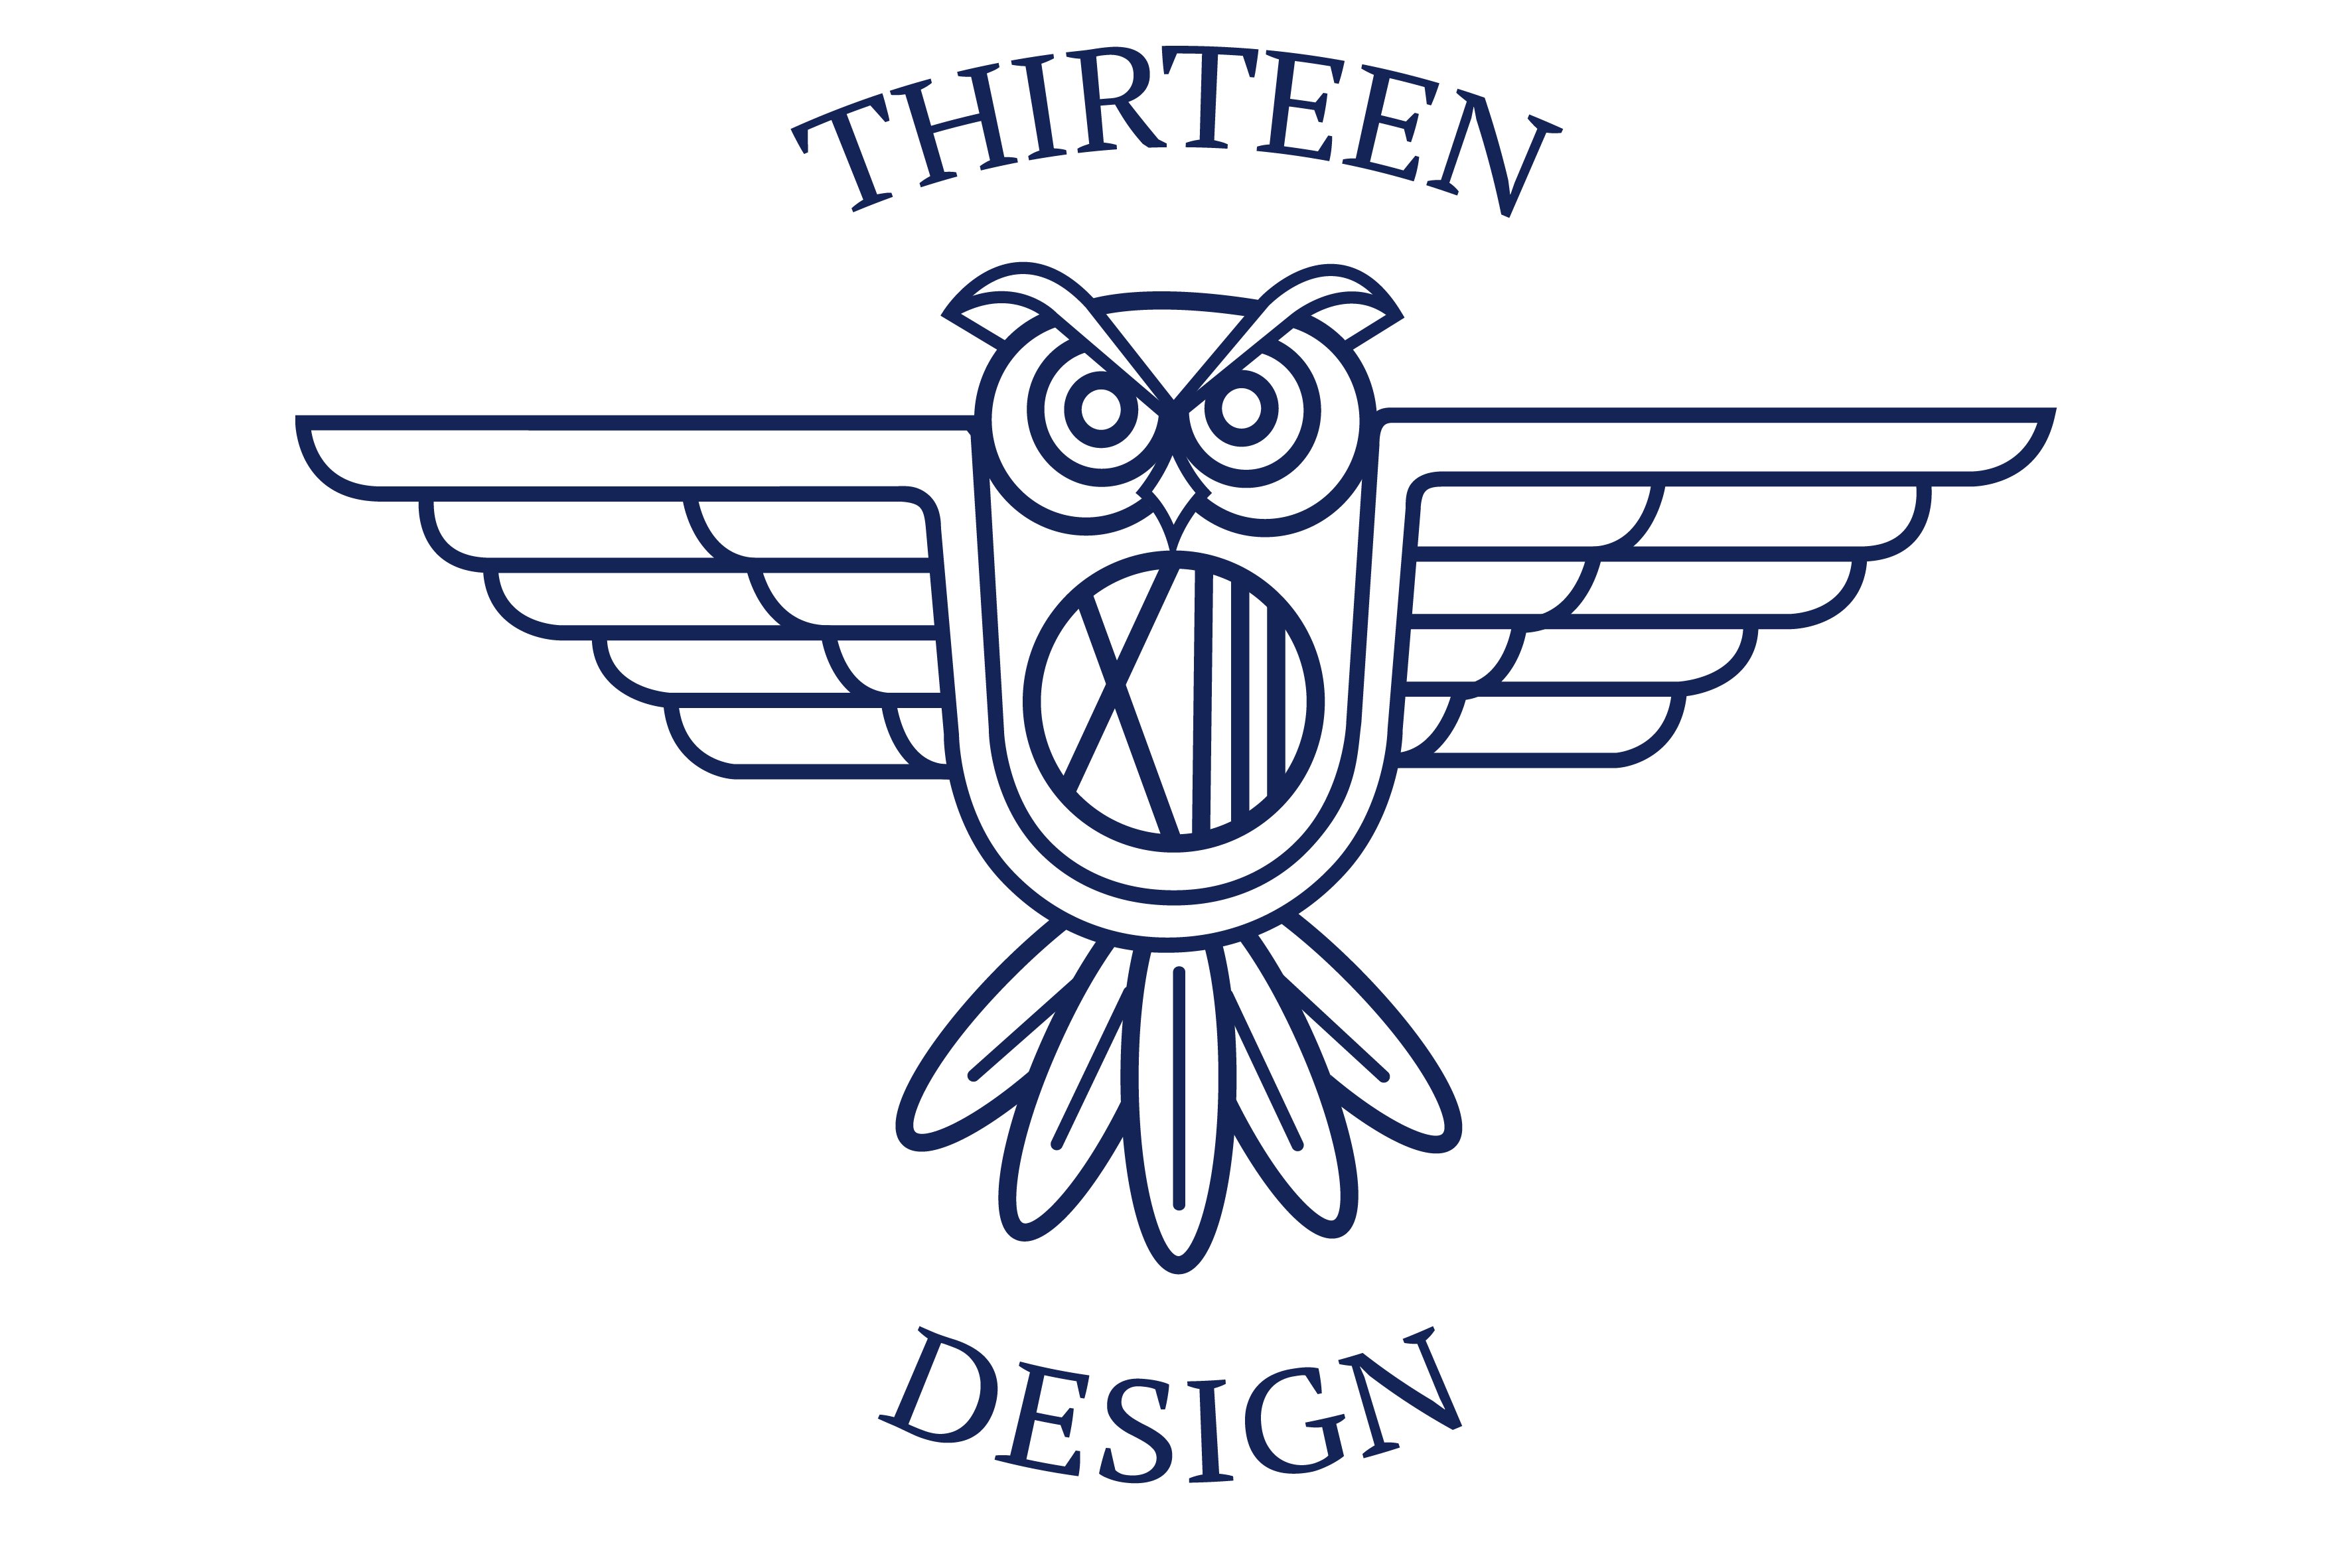 13 Thirteen Design